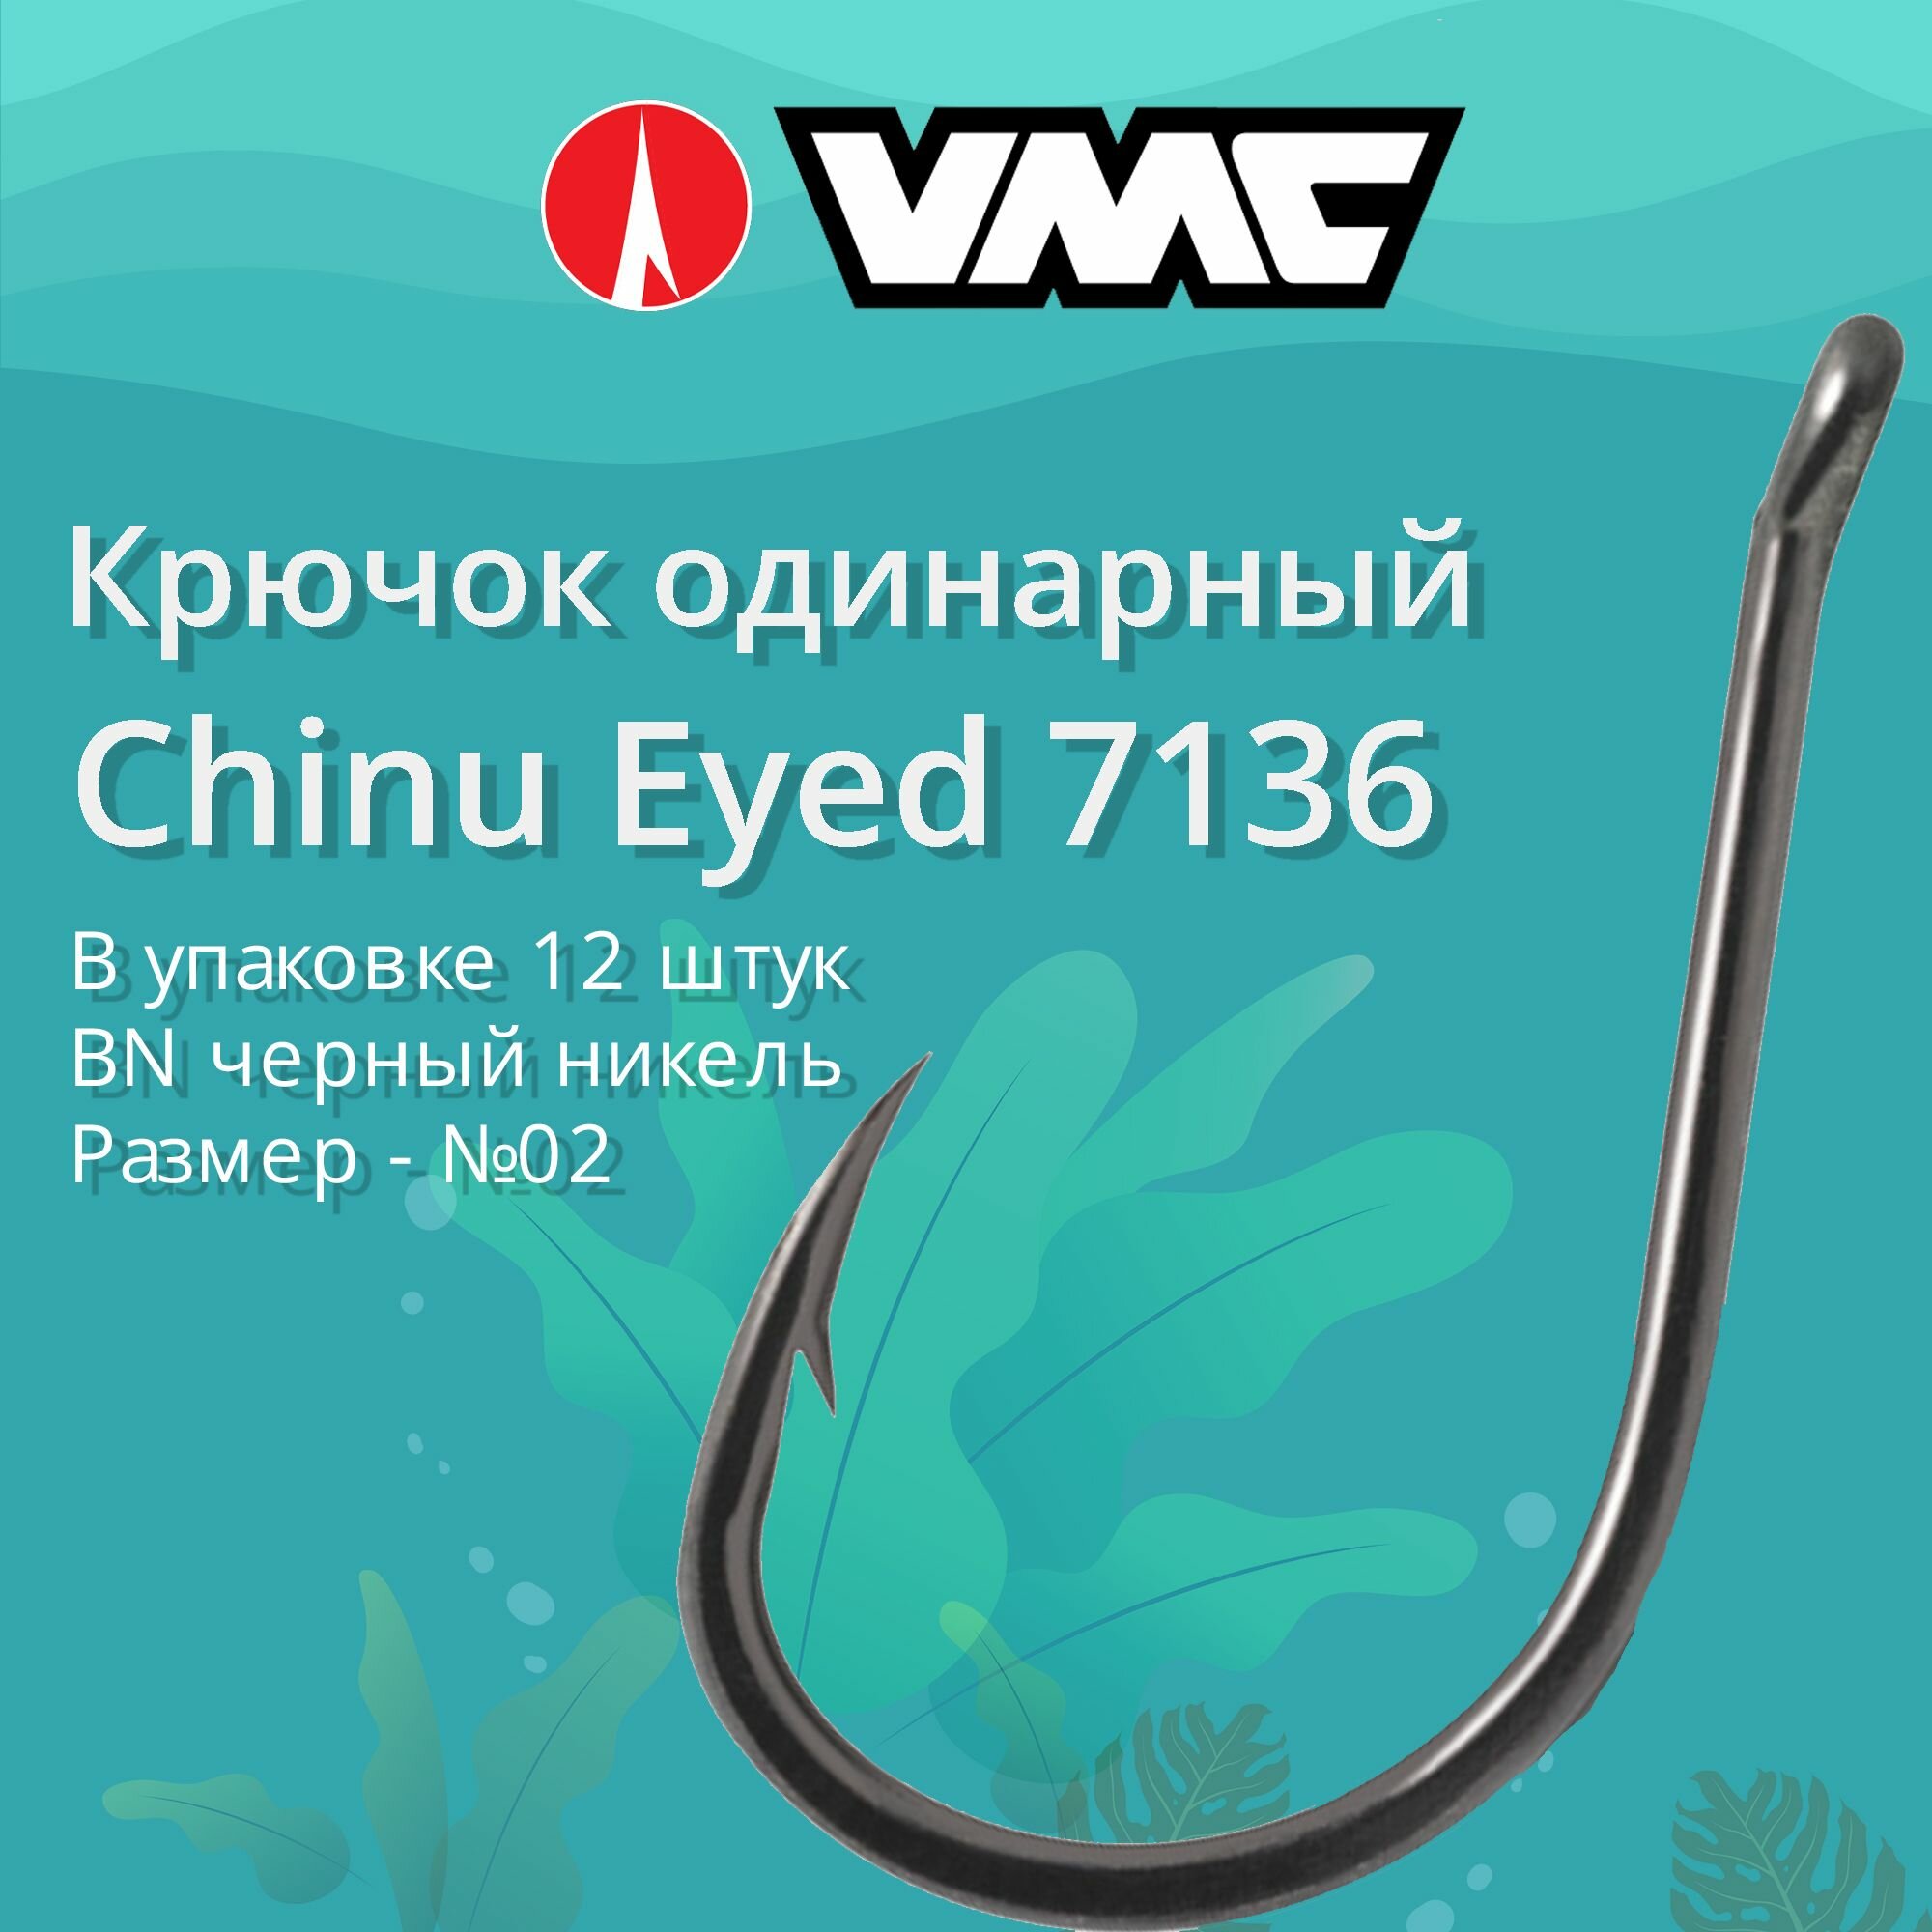 Крючки для рыбалки (одинарный) VMC Chinu Eyed 7136 BN (черн. никель) №02 упаковка 12 штук